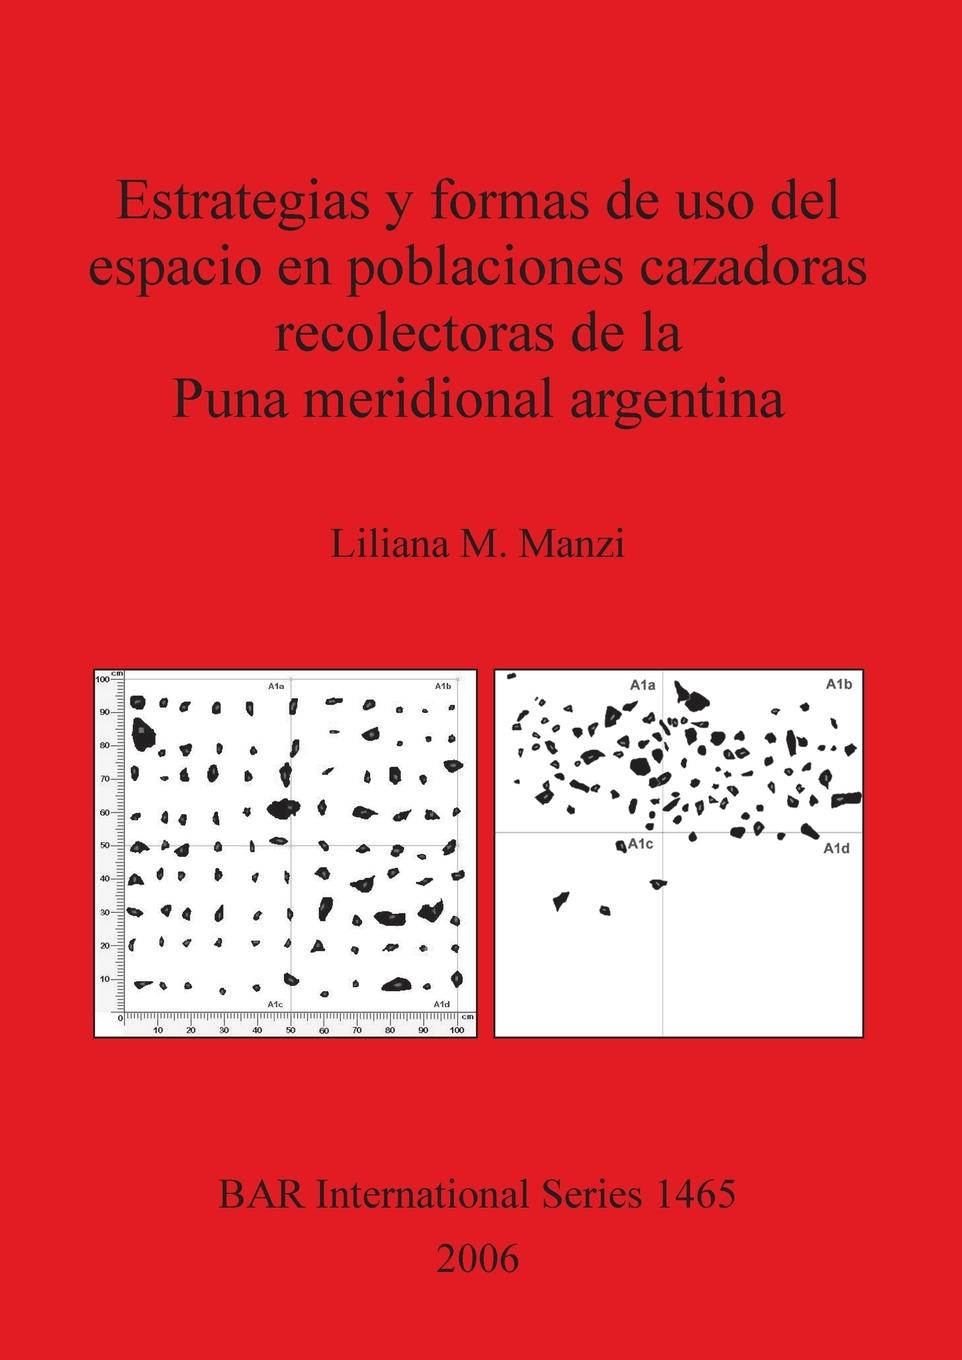 Carte Estrategias y formas de uso del espacio en poblaciones cazadoras recolectoras de la Puna Meridional Argentina Liliana M Manzi